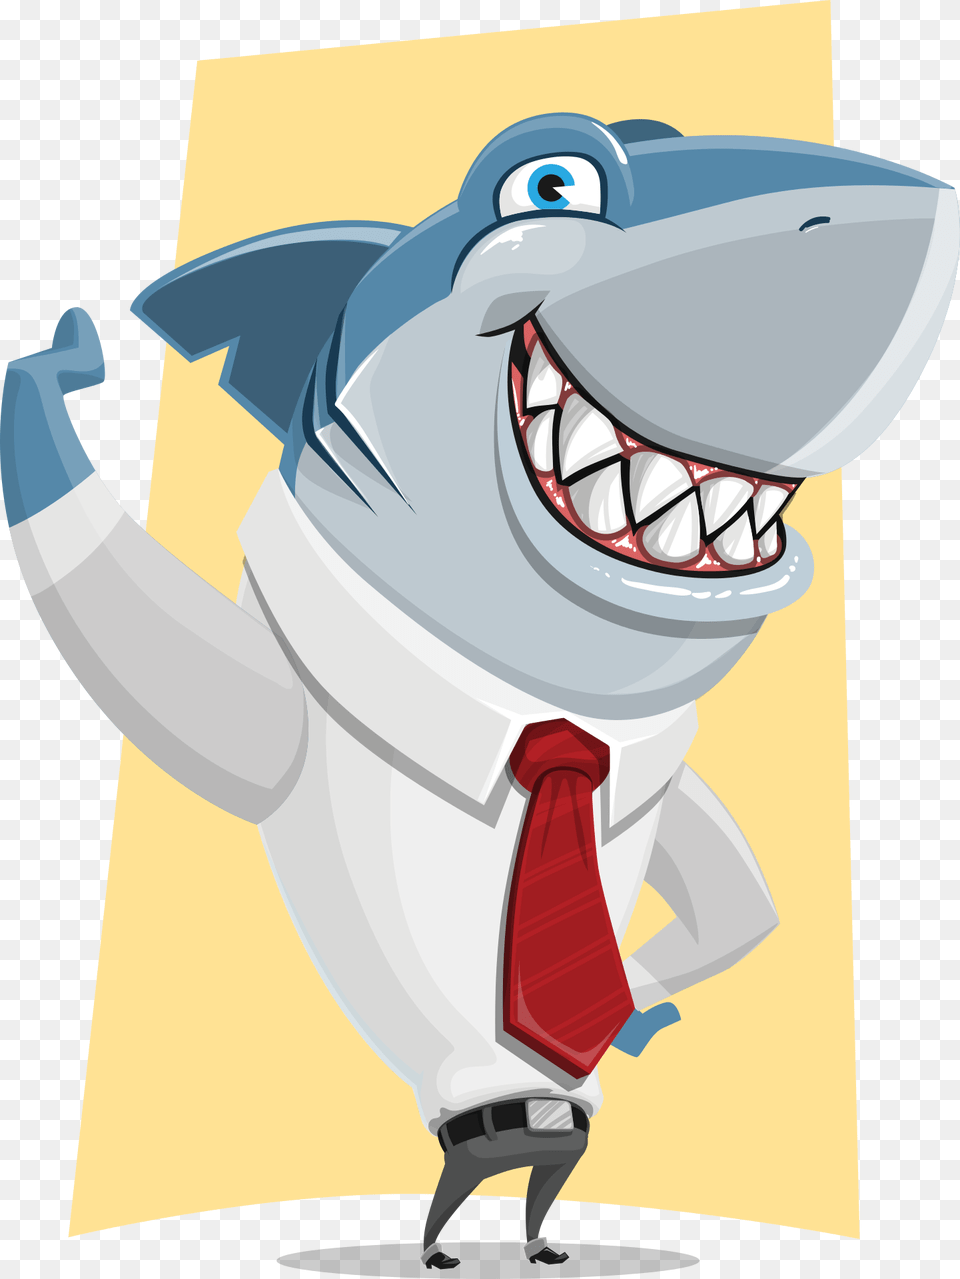 Shark Business Cartoon, Accessories, Formal Wear, Tie, Necktie Png Image